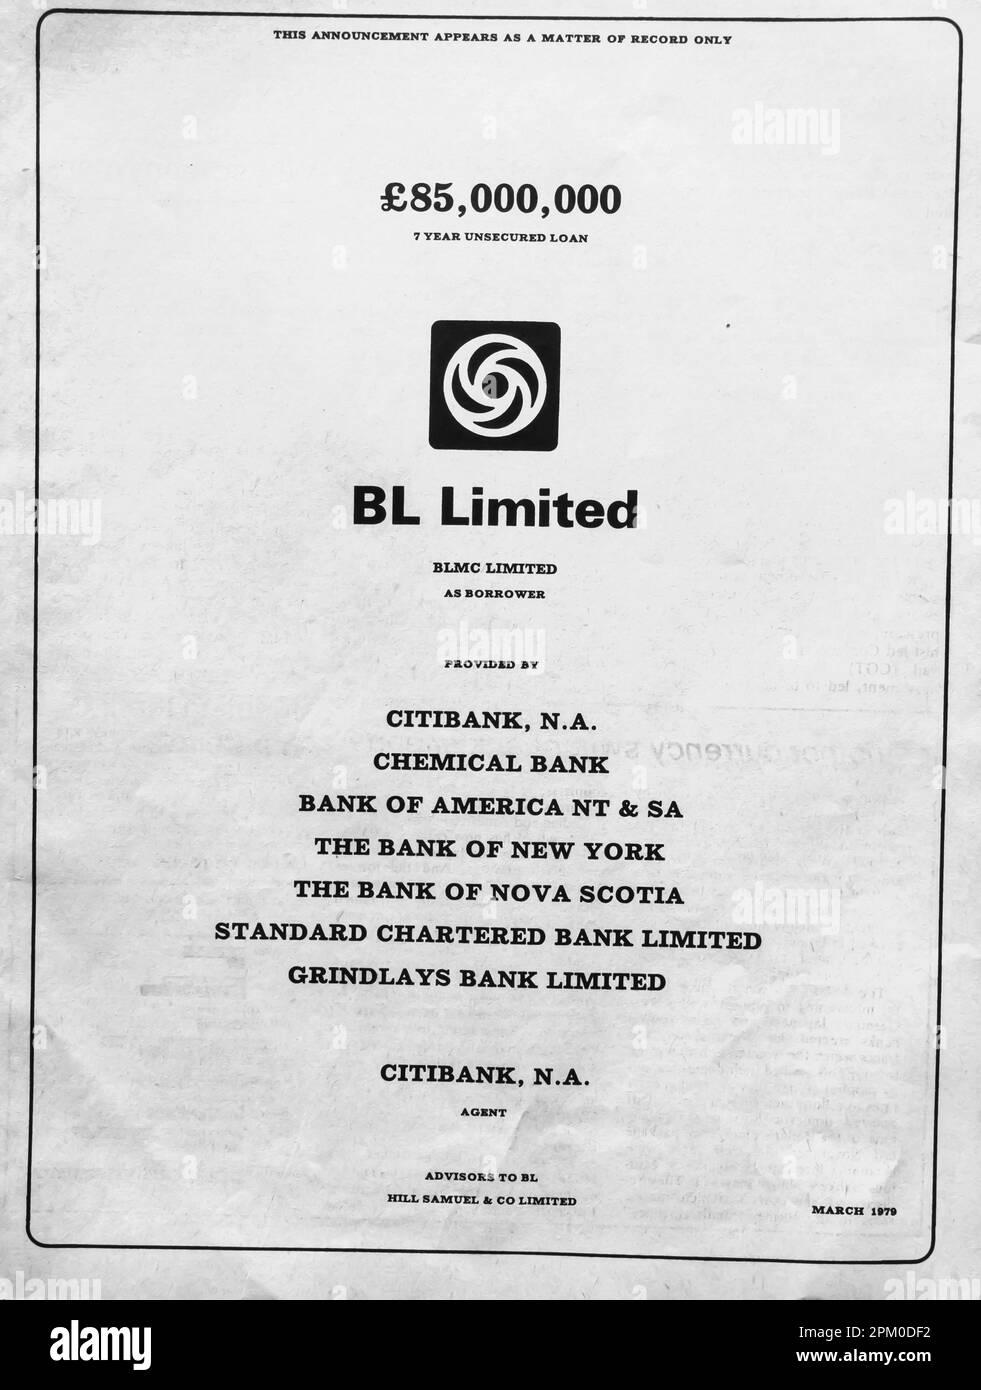 BL Limited annonce de prêt non garanti dans un magazine britannique 1975 Banque D'Images